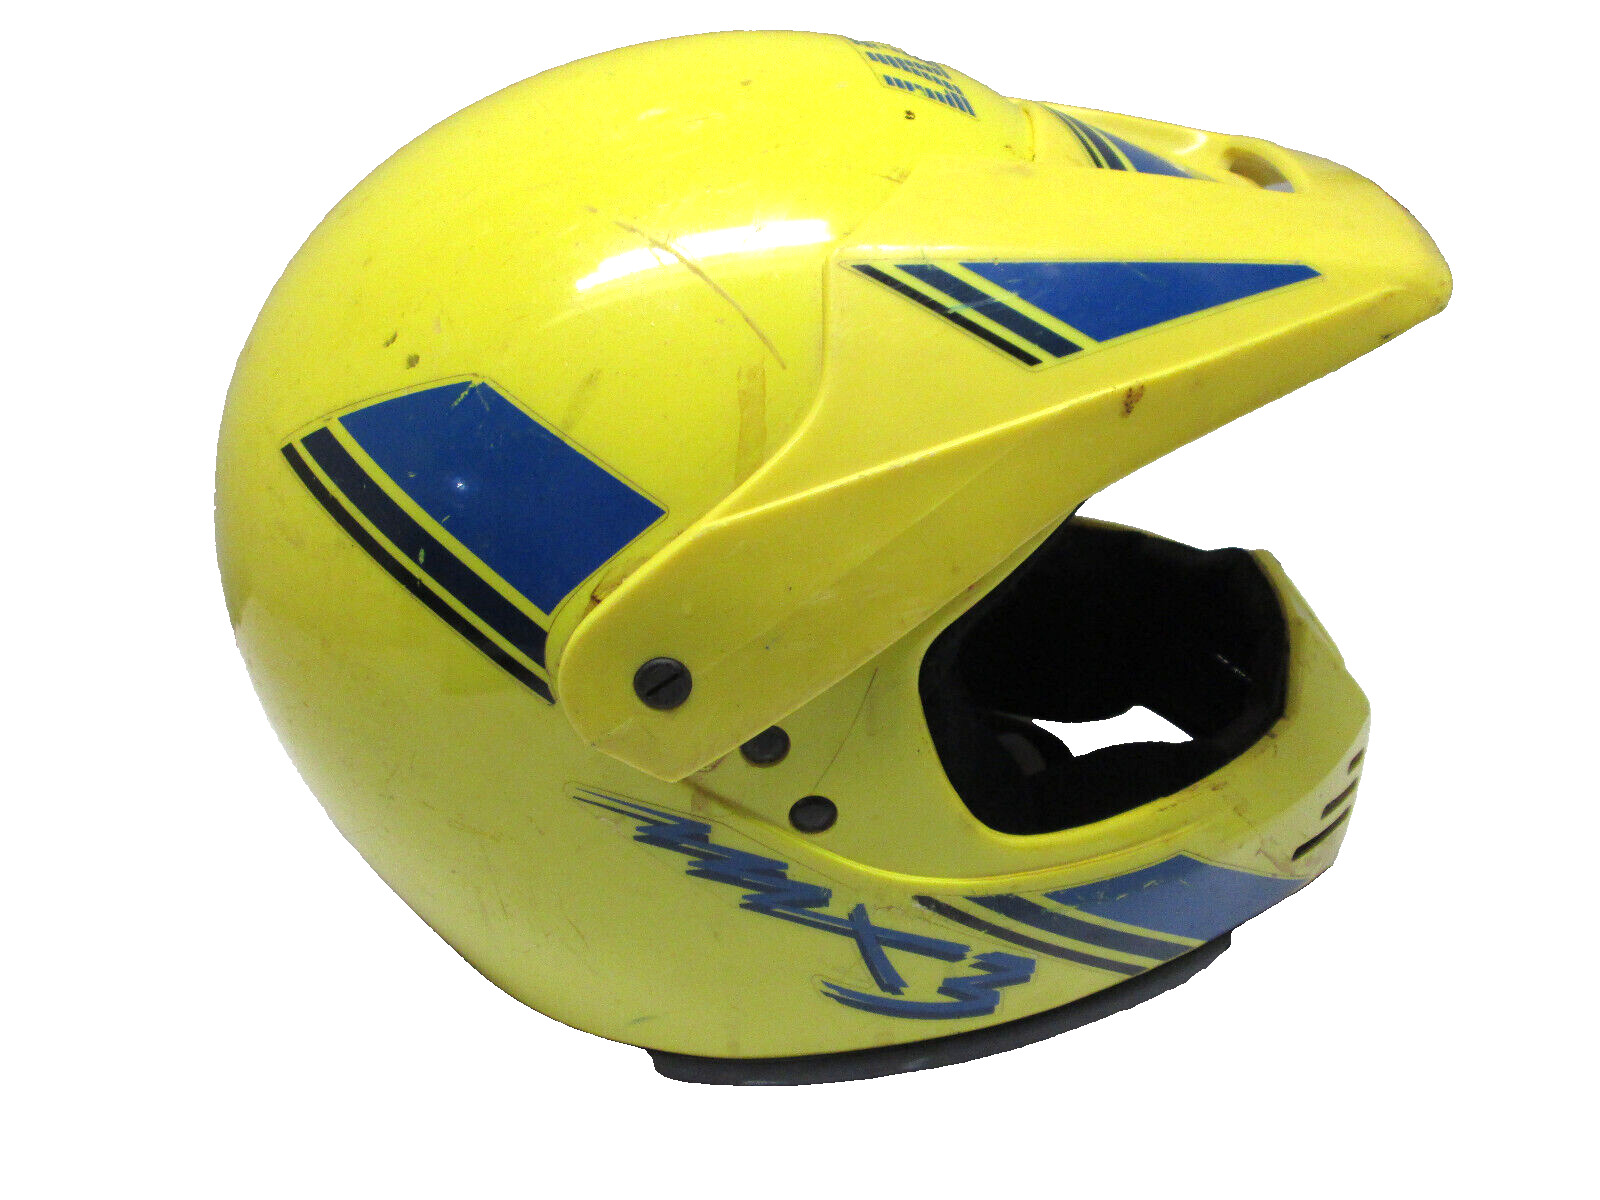 Vintage Lazer MX3 Motocross Helmet Motorcycle Dirt Bike 1989 CROSS BMX yellow L